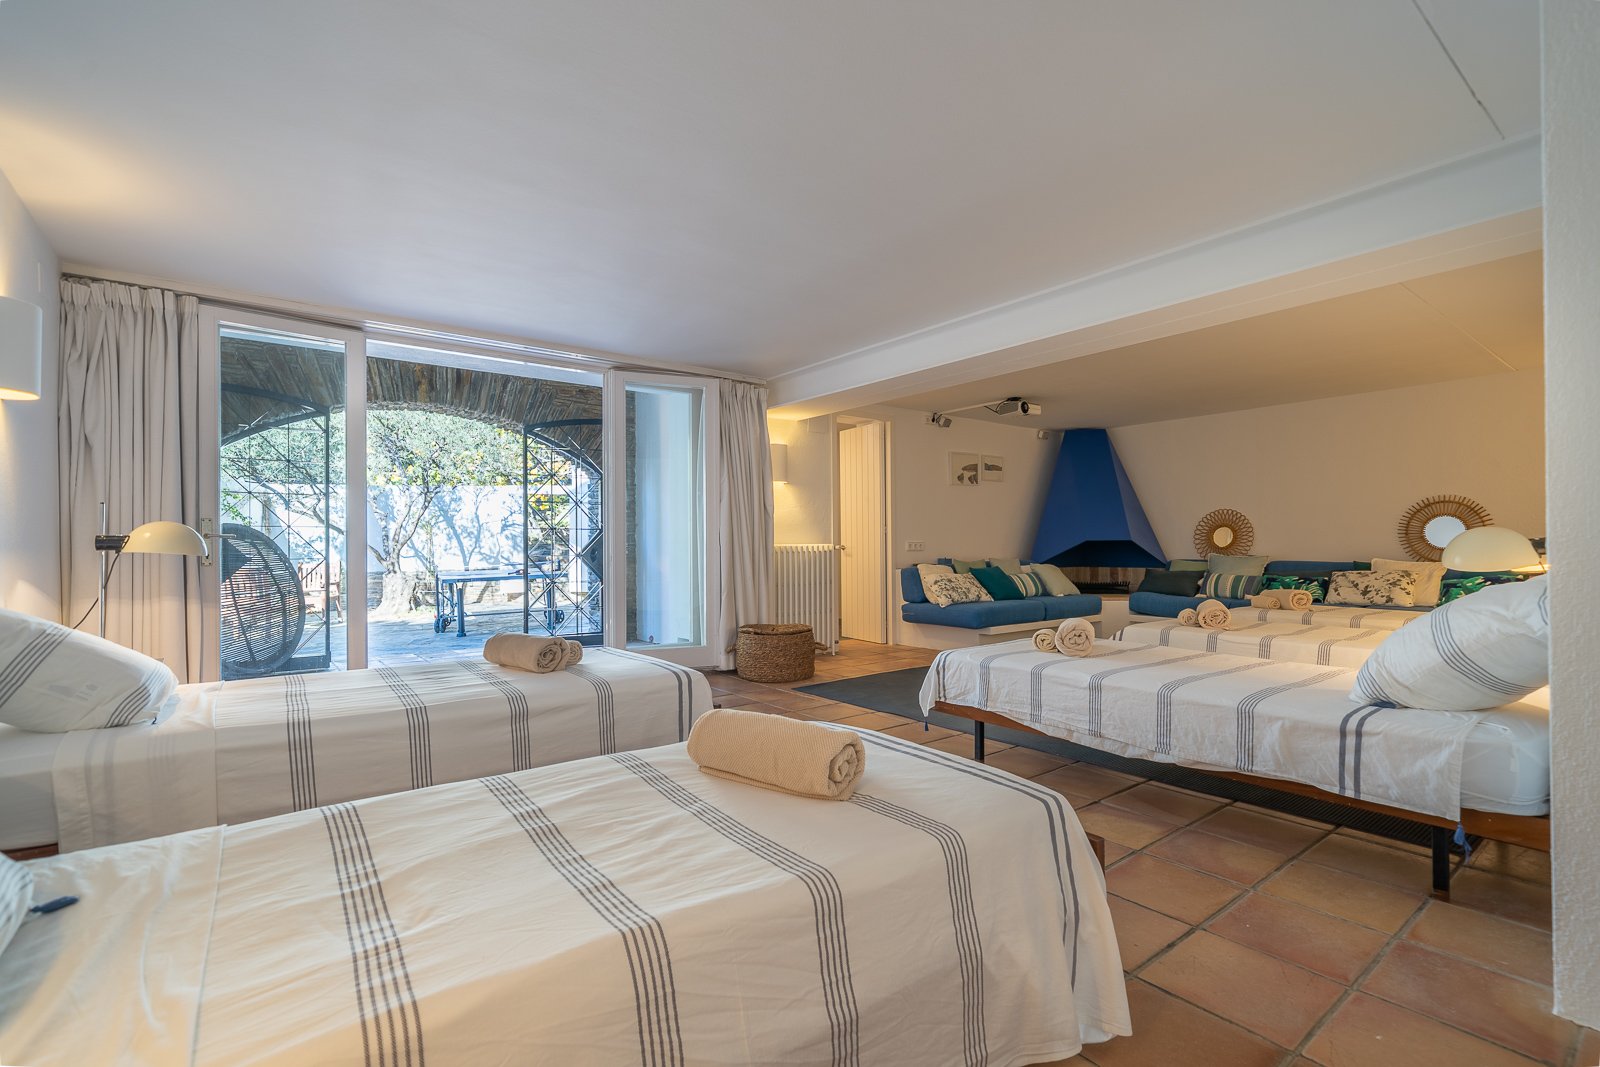 Luxury villa with dormitory in Cadaqués, Spain